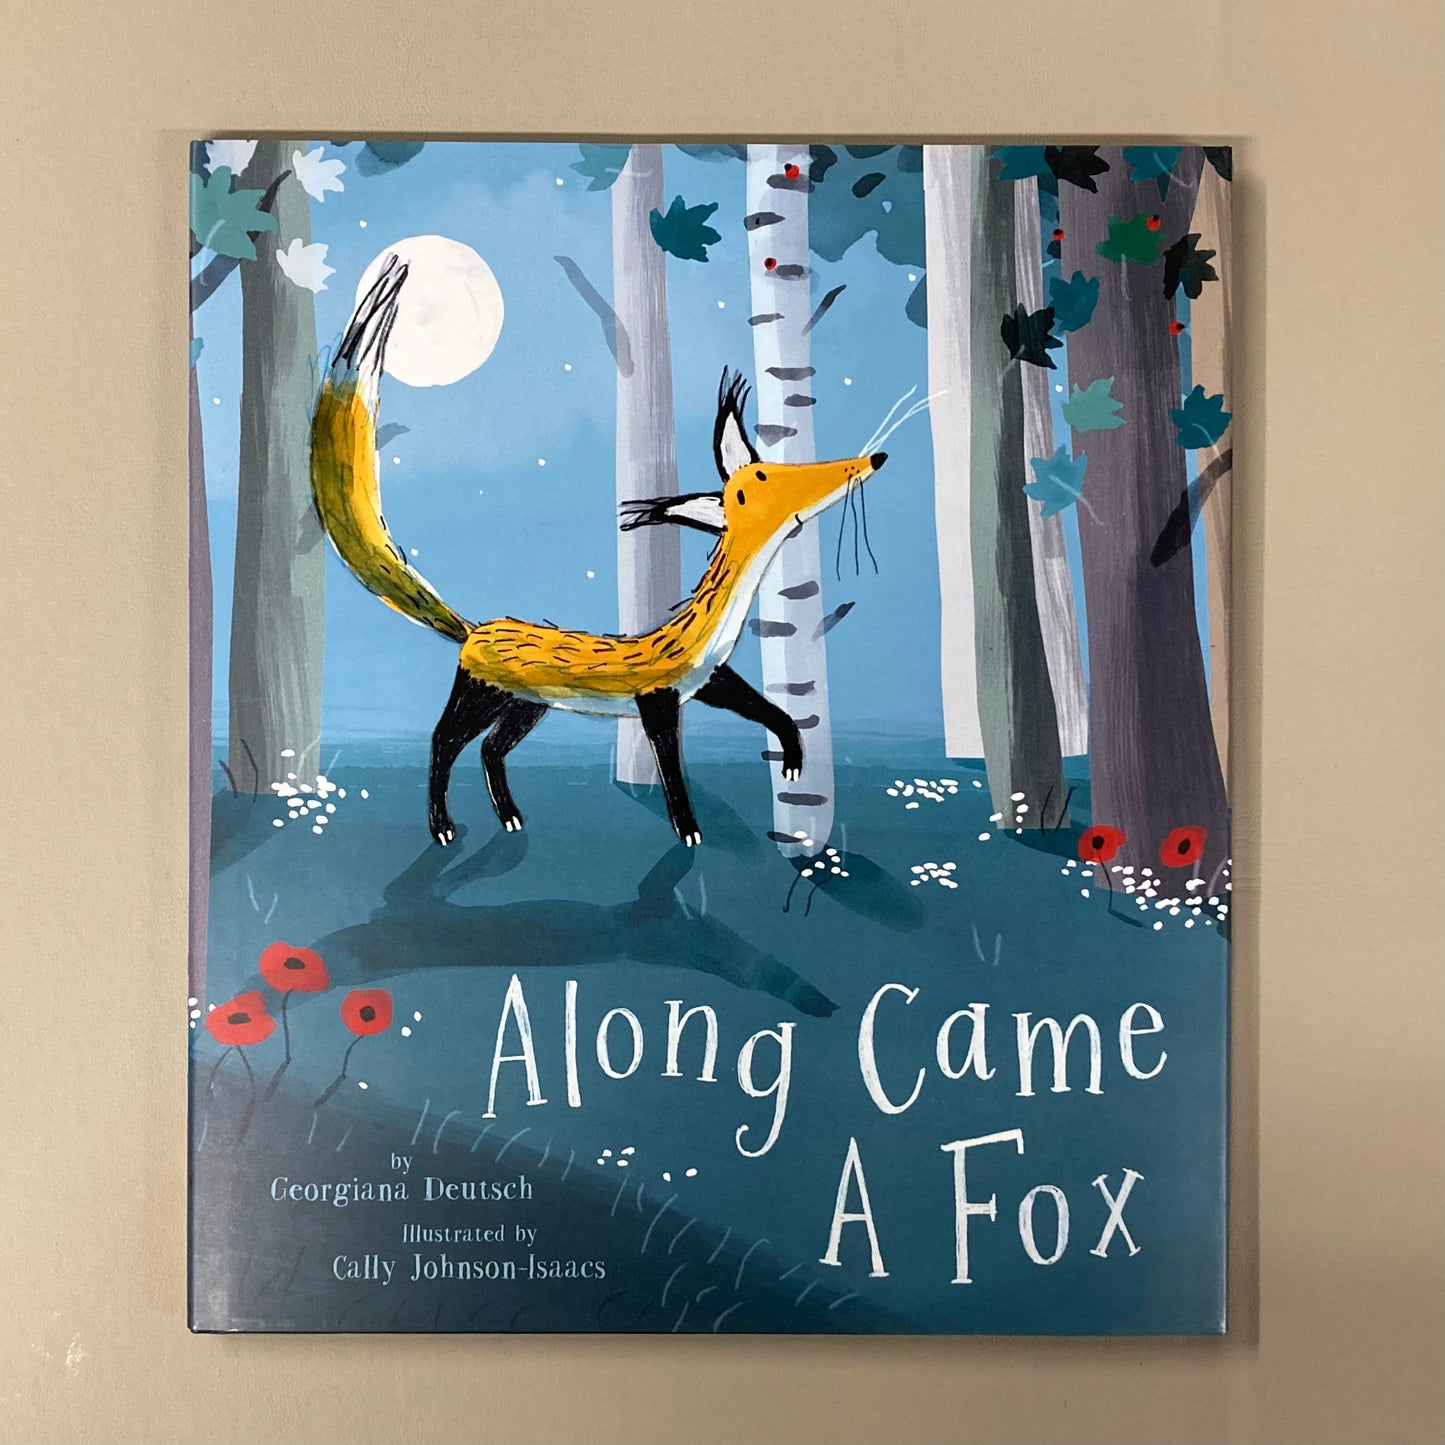 Along Came a Fox